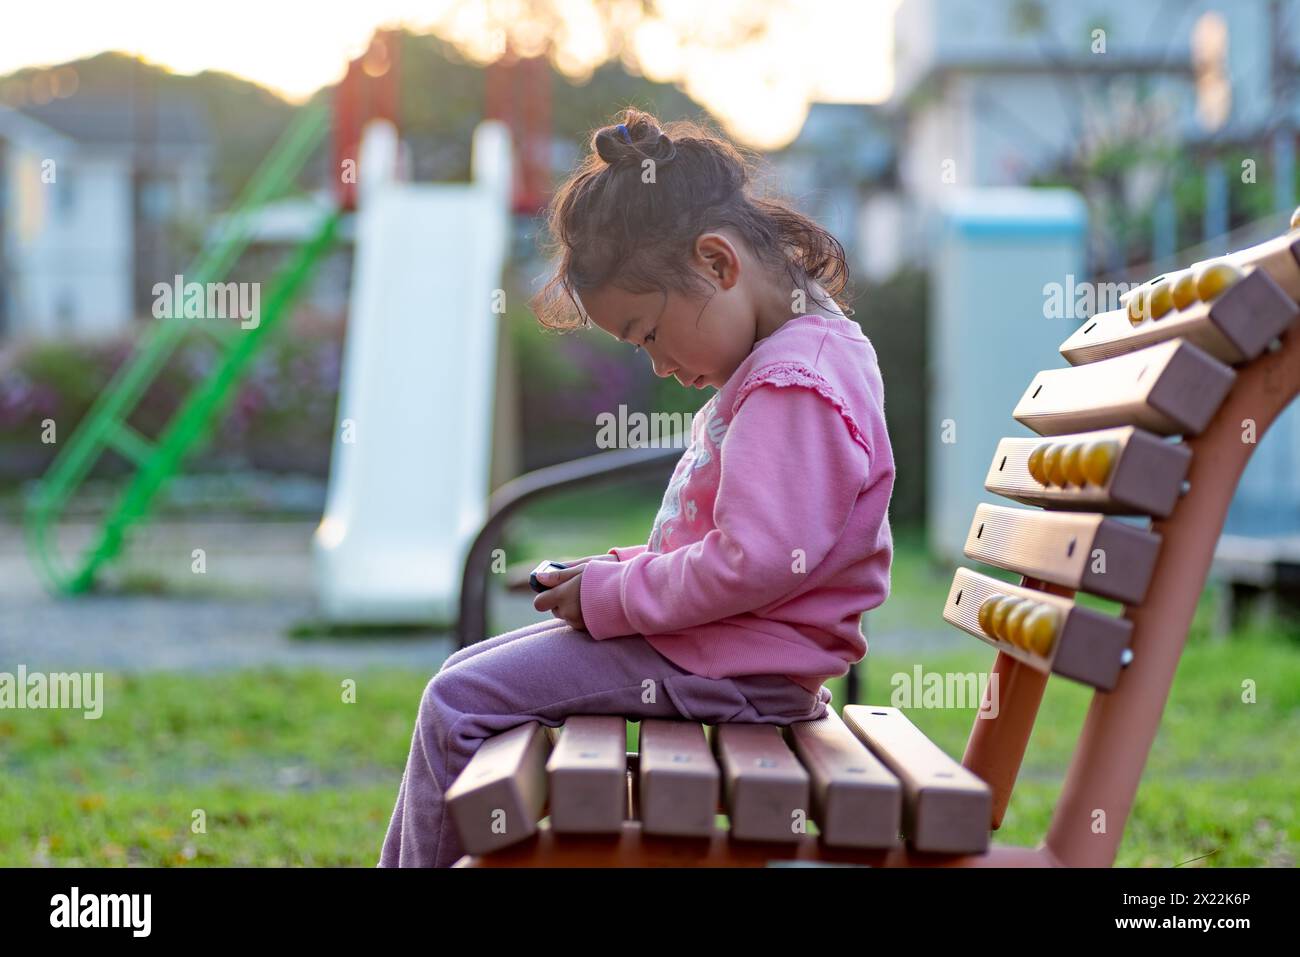 Un bambino che utilizza o gioca con uno smartphone al parco giochi invece di giocare. Una bambina che guarda video su uno smartphone. Foto Stock